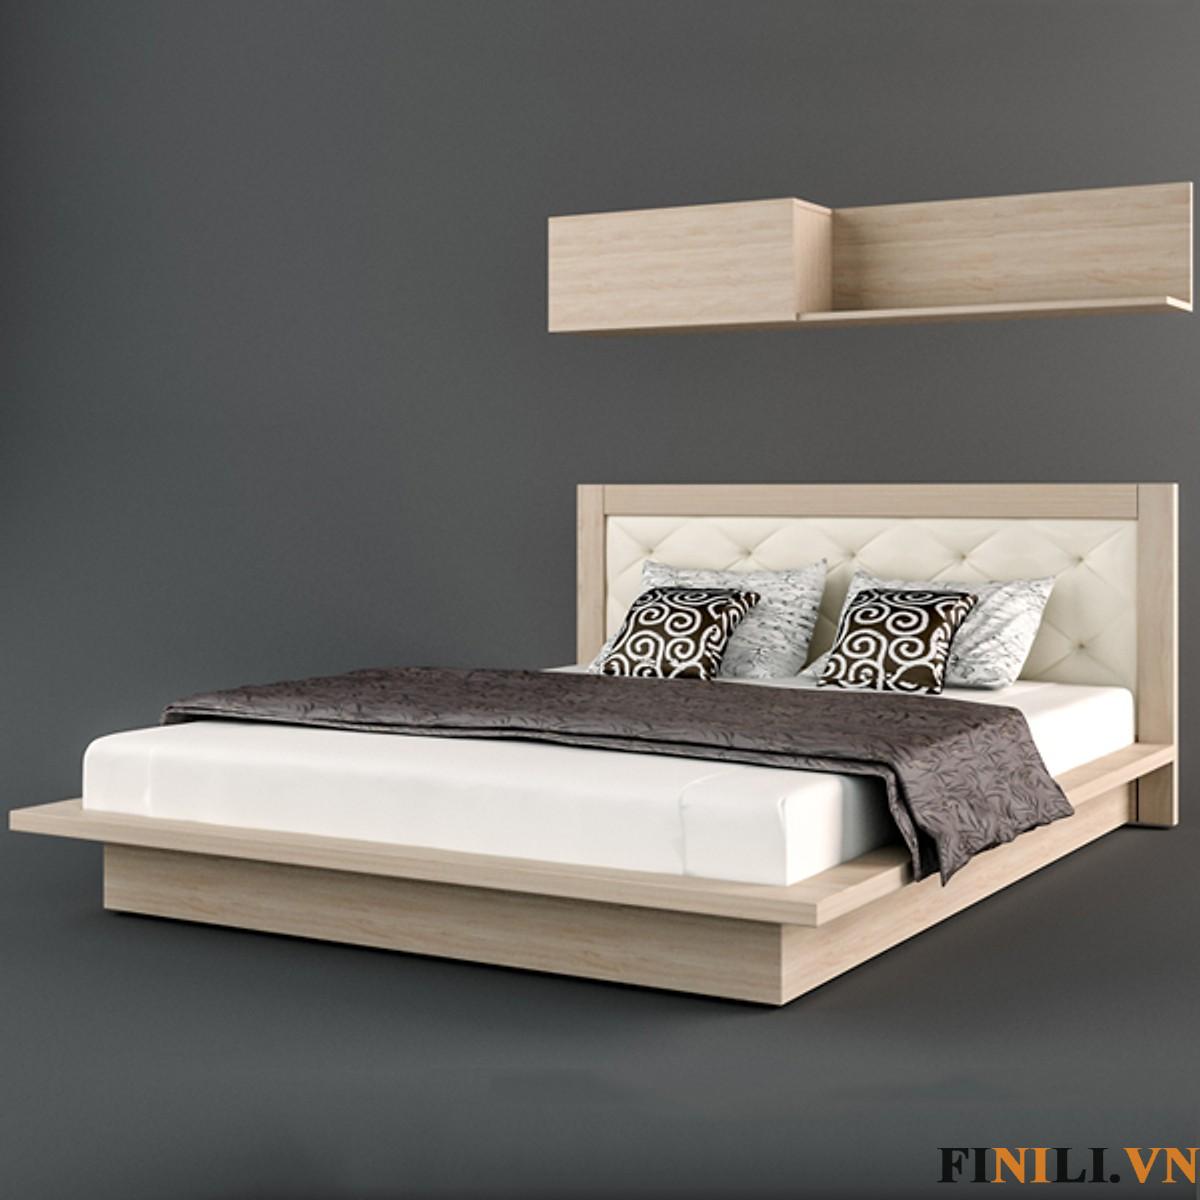 Giường ngủ kiểu Nhật gỗ công nghiệp FNL-10012 thiết kế với xu hướng đa năng, tích hợp